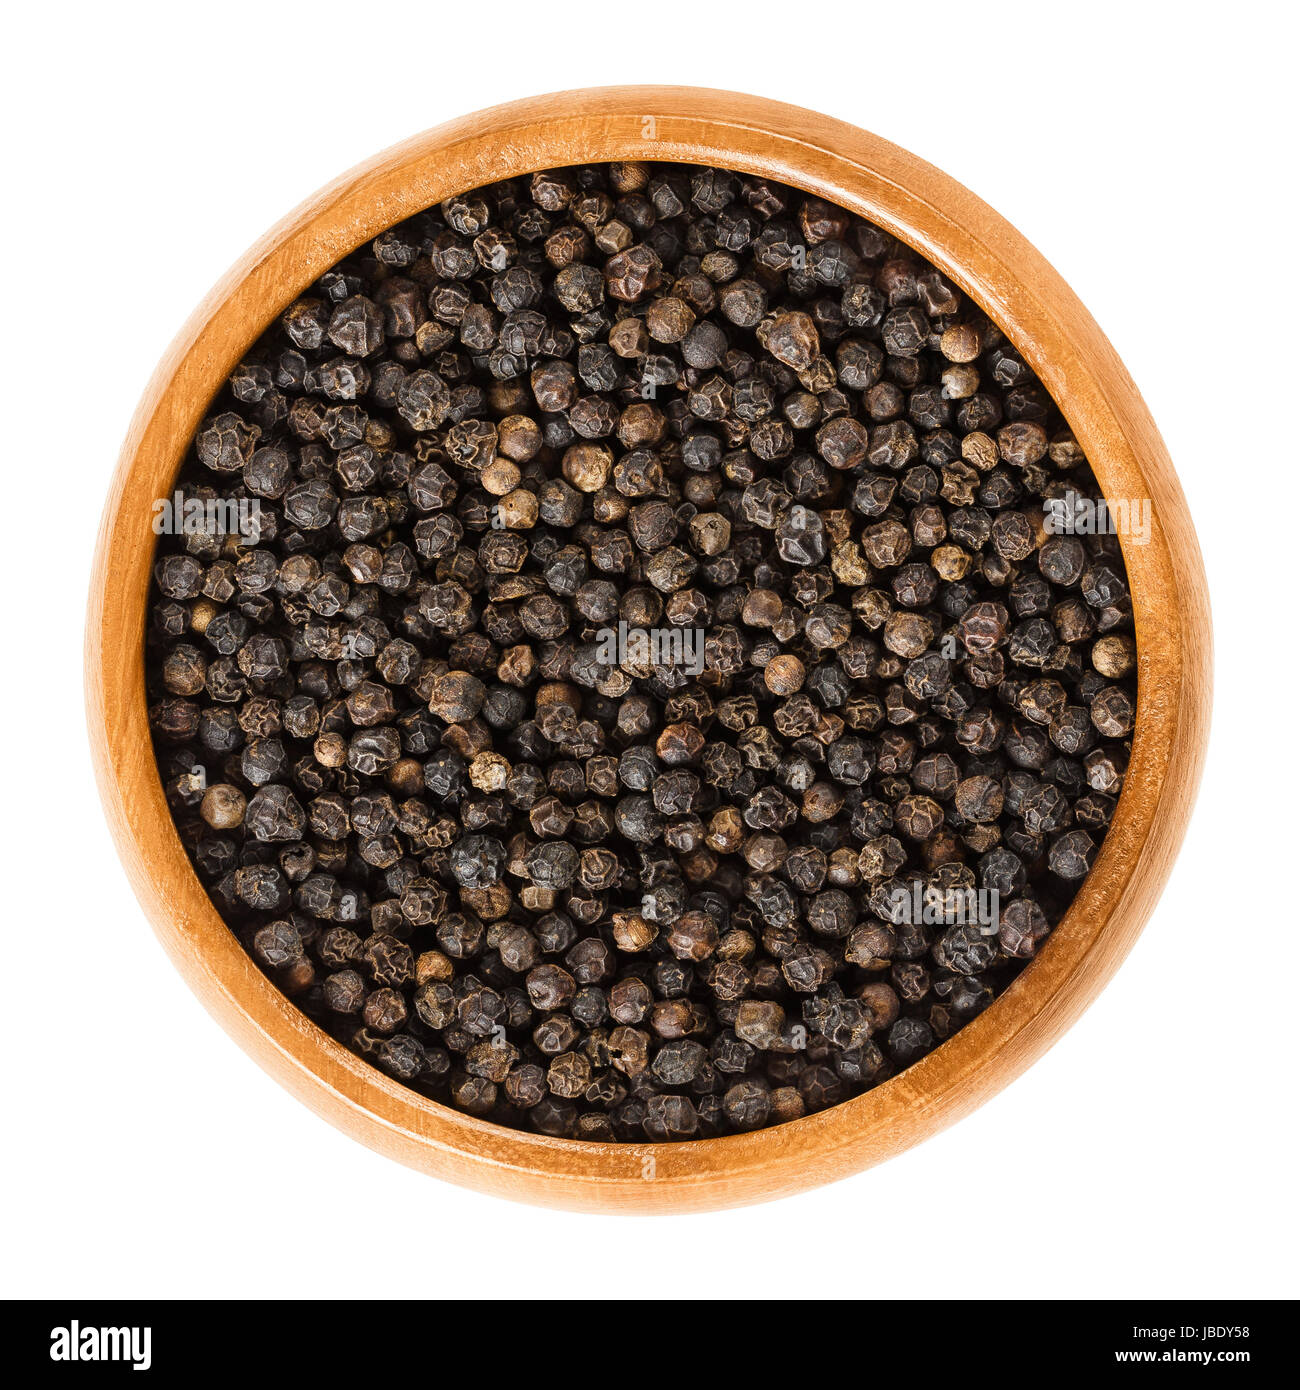 Schwarzer Pfeffer in Holzschale. Getrocknete Beeren des Piper Nigrum nennt man Pfefferkörner. Aus der Unreife Steinfrüchte von der Pfefferpflanze hergestellt. Gewürz. Stockfoto